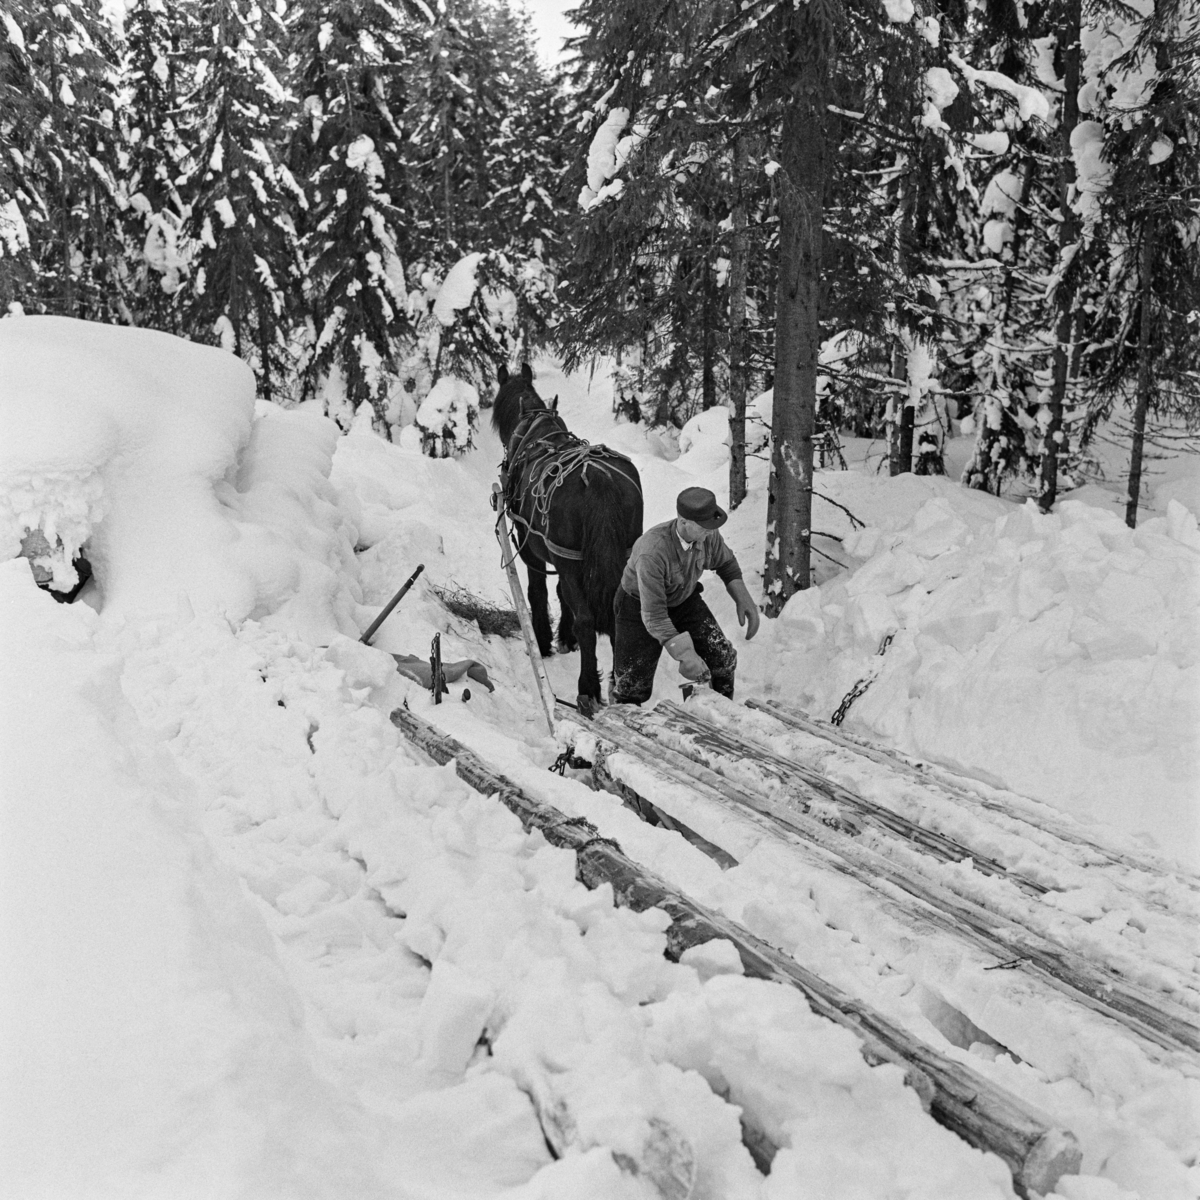 Tømmerkjøring med dølahest og rustning på Jømna i Elverum kommune i Hedmark vinteren 1969.  Fotografiet er tatt ved ei lunne i granskog.  Det gir et innblikk i hvilket strev kjøreren hadde med å få de nedsnødde stokkene fram og opp på den todelte sleden, mens hesten sto tålmodig og ventet.  Denne kjørekaren var kledd i vadmelsbukser og busserull.  Han hadde skyggelue på hodet og digre votter på hendene.  Fordelen med de todelte rustningene var at de fulgte terrenget og sledevegens kurver og staup så mye smidigere enn en de tidligere brukte langsledene, som dessuten kunne være vanskelige å vende i skogen.  Da dette fotografiet ble tatt var også tømmerkjøringa med hest og rustning i ferd med å bli avløst av traktorredskap (jf. f. eks. SJF-F. 007146-SJF-F. 007150). 